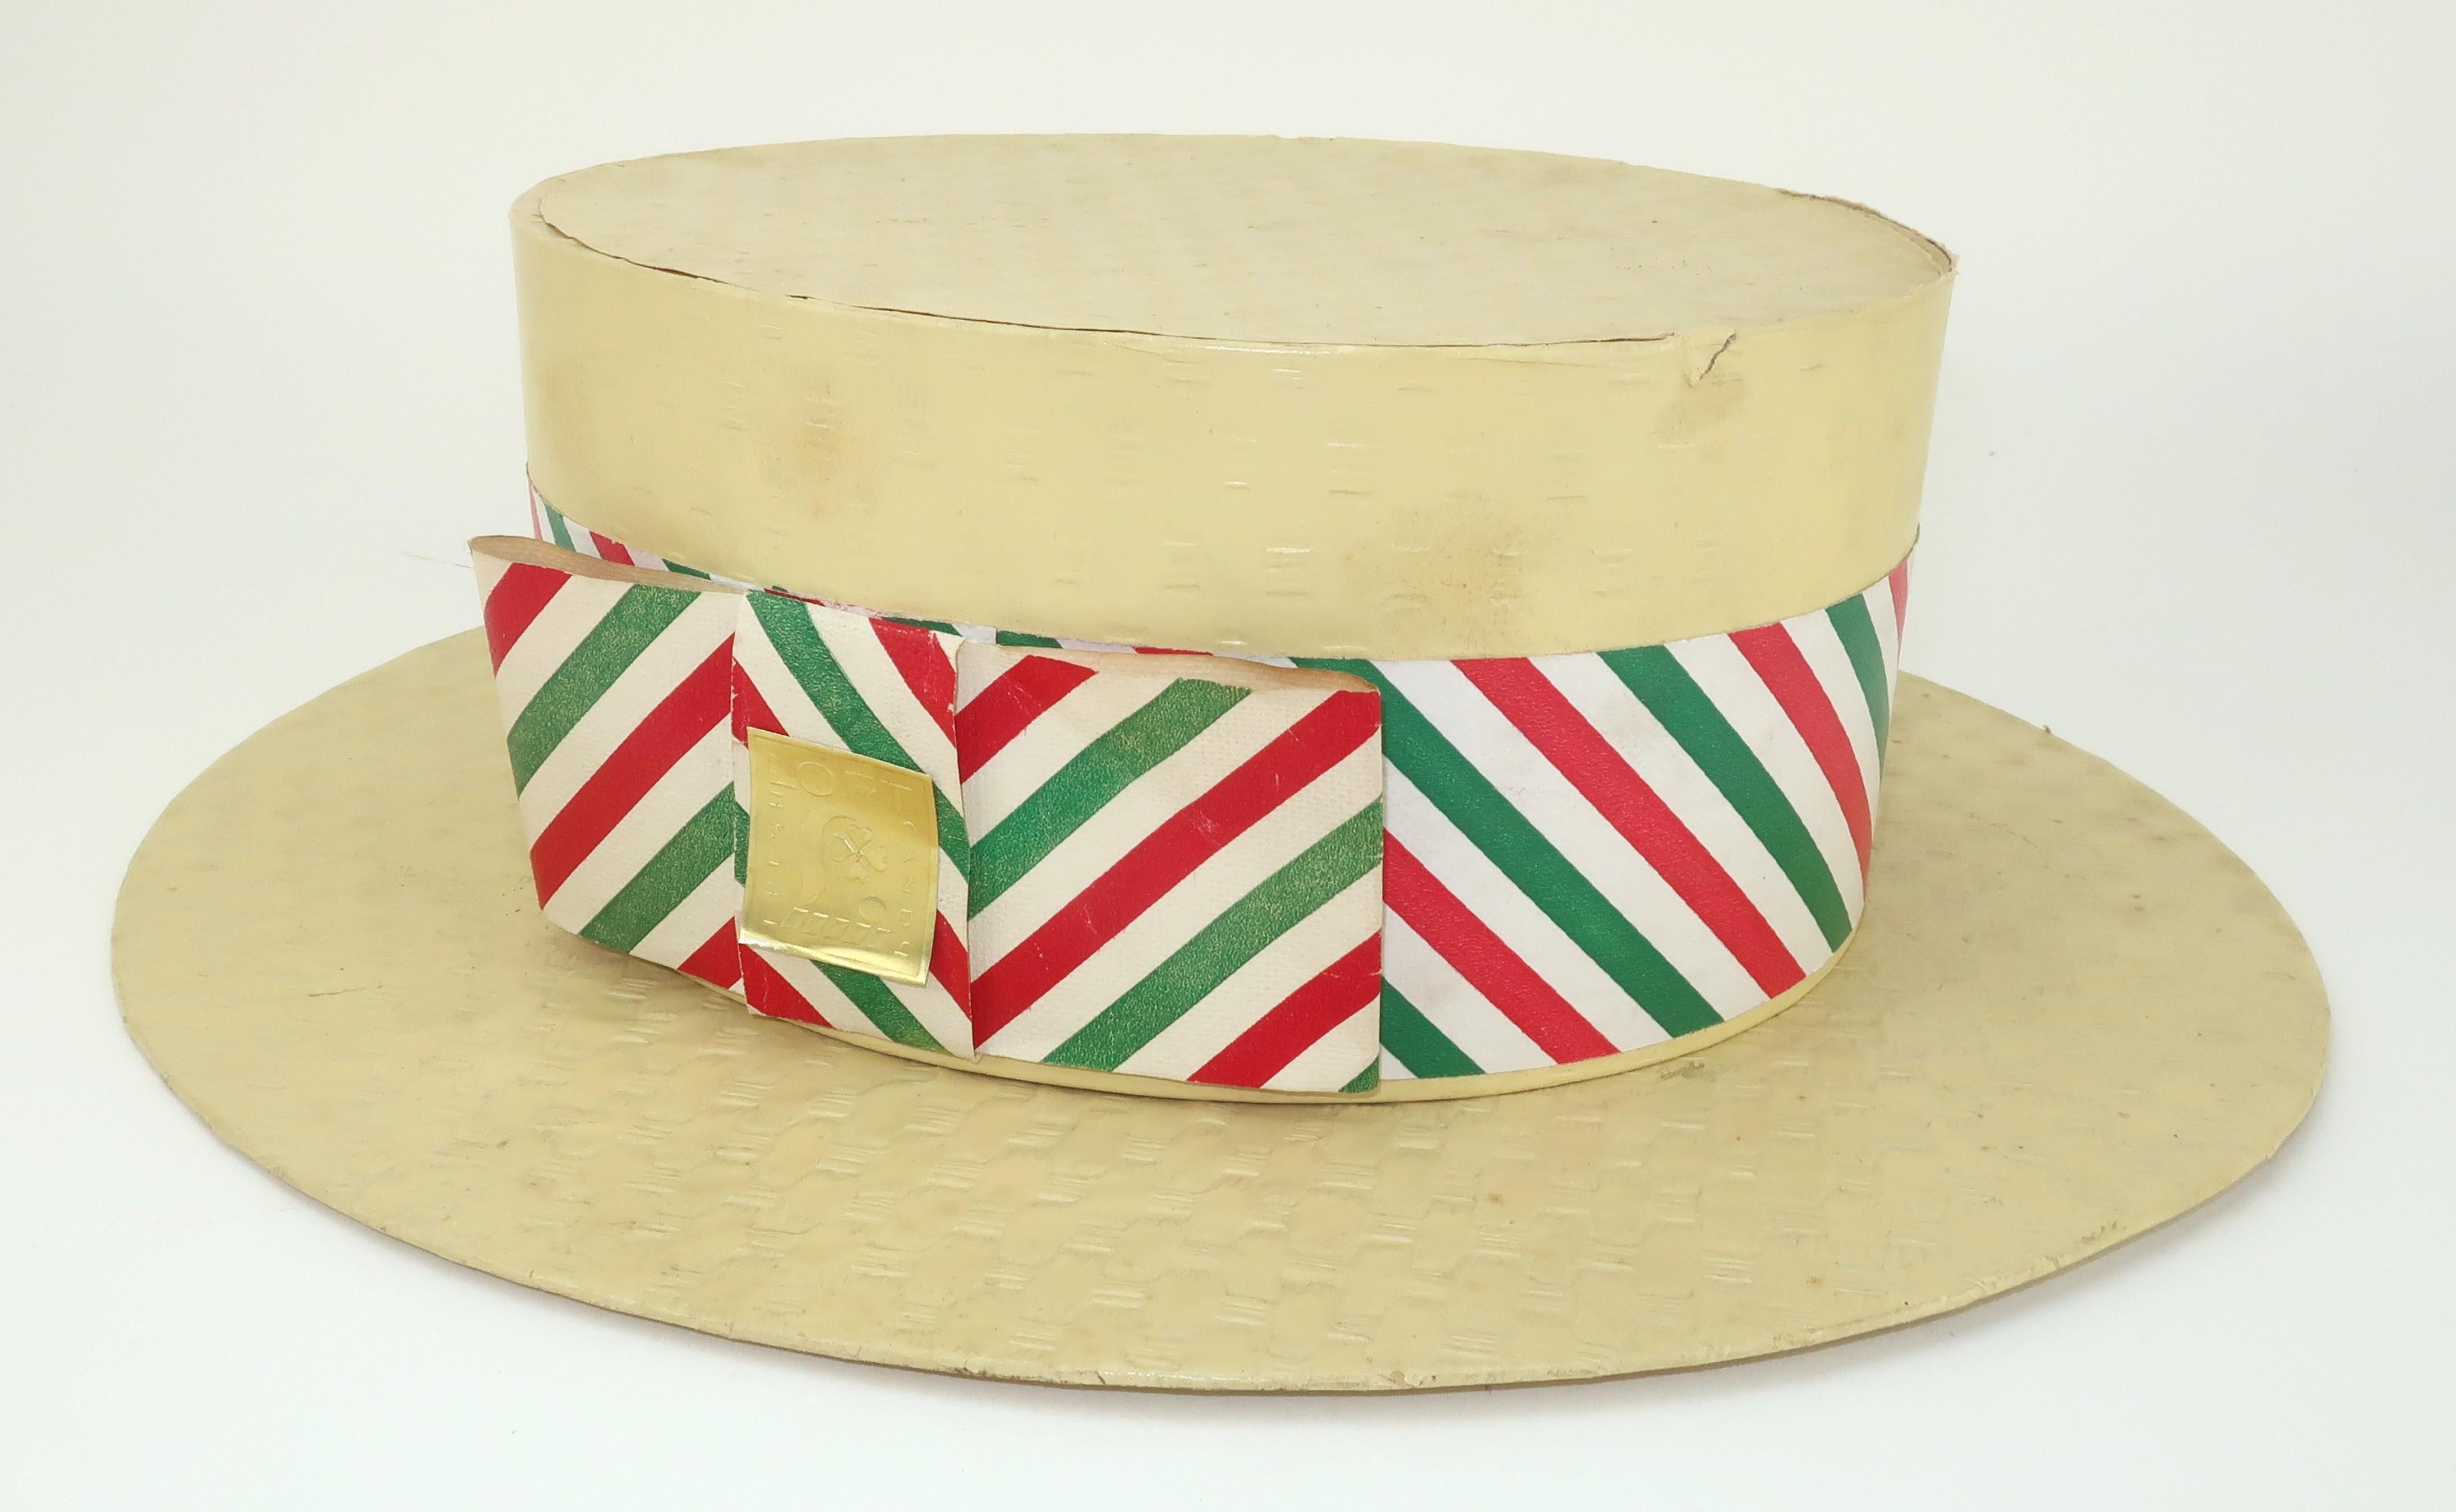 Il était une fois un charmant chapeau de style canotier qui avait un doux secret... il s'agissait d'une boîte à bonbons fantaisie produite par Loft's Candies de New York. Sellers a été fondée en 1860 et, dans les années 1920, elle était le plus